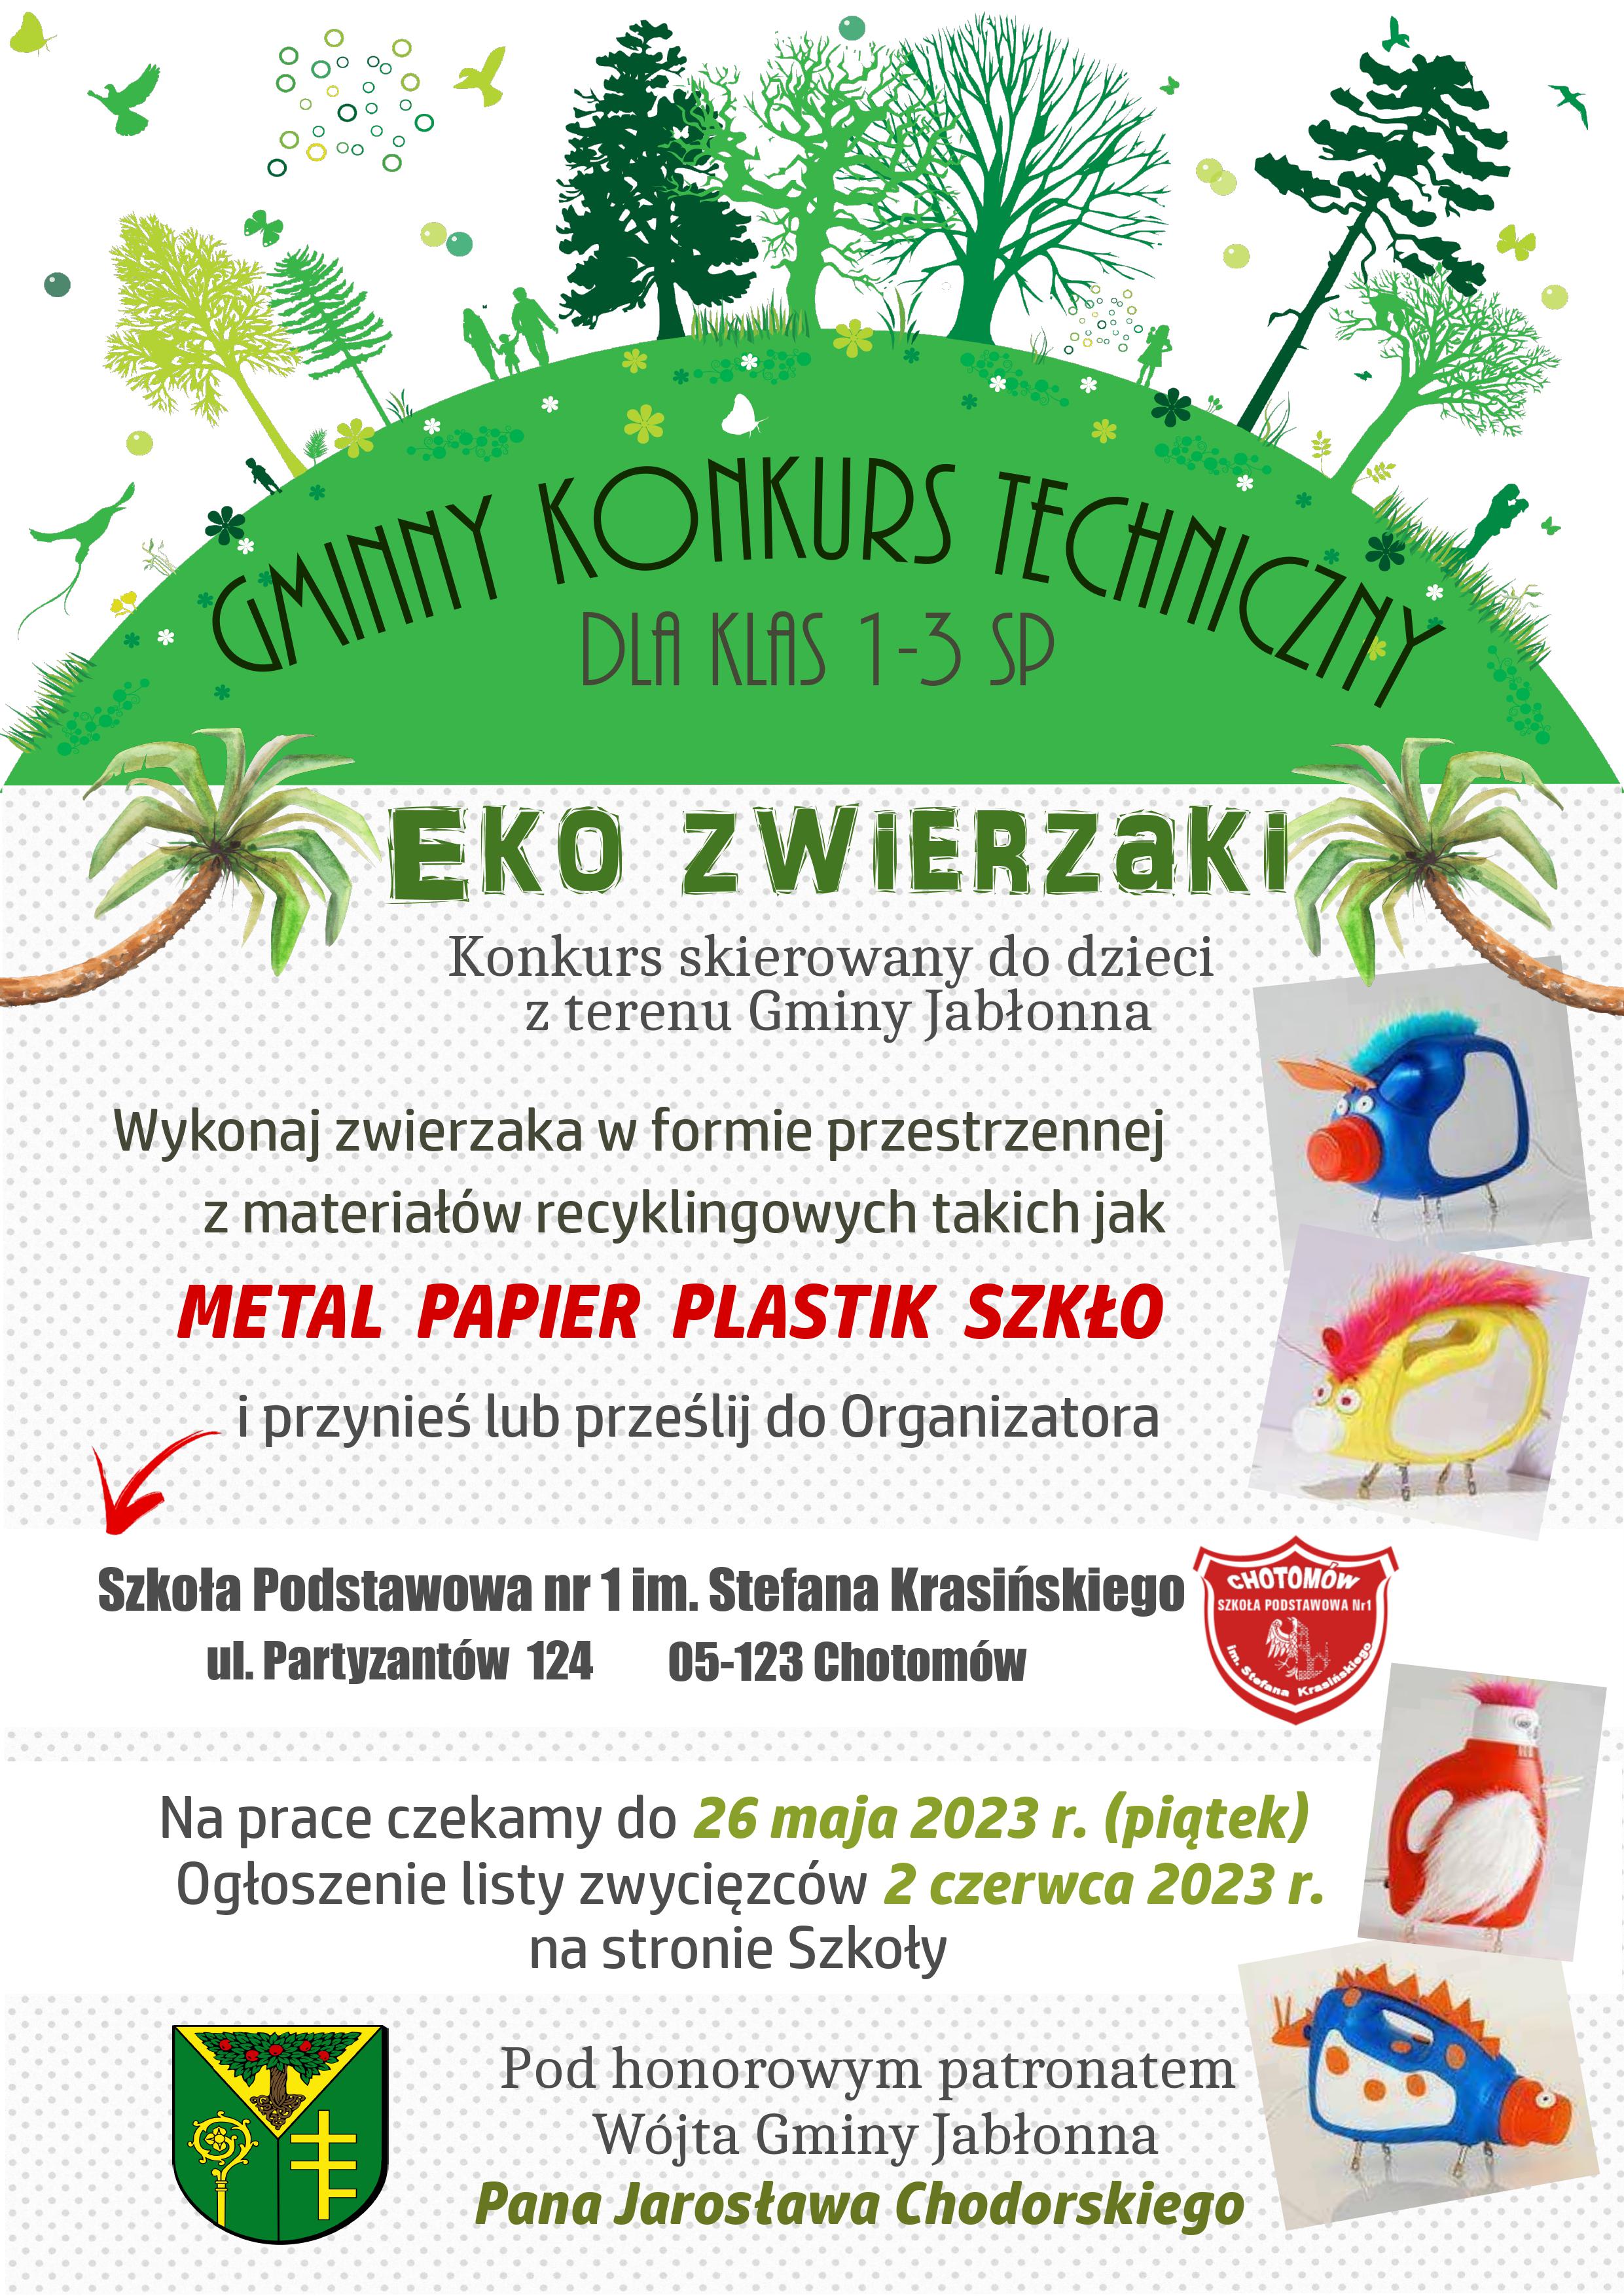 Plakat informujący o konkursie technicznym EKO ZWIERZAKI